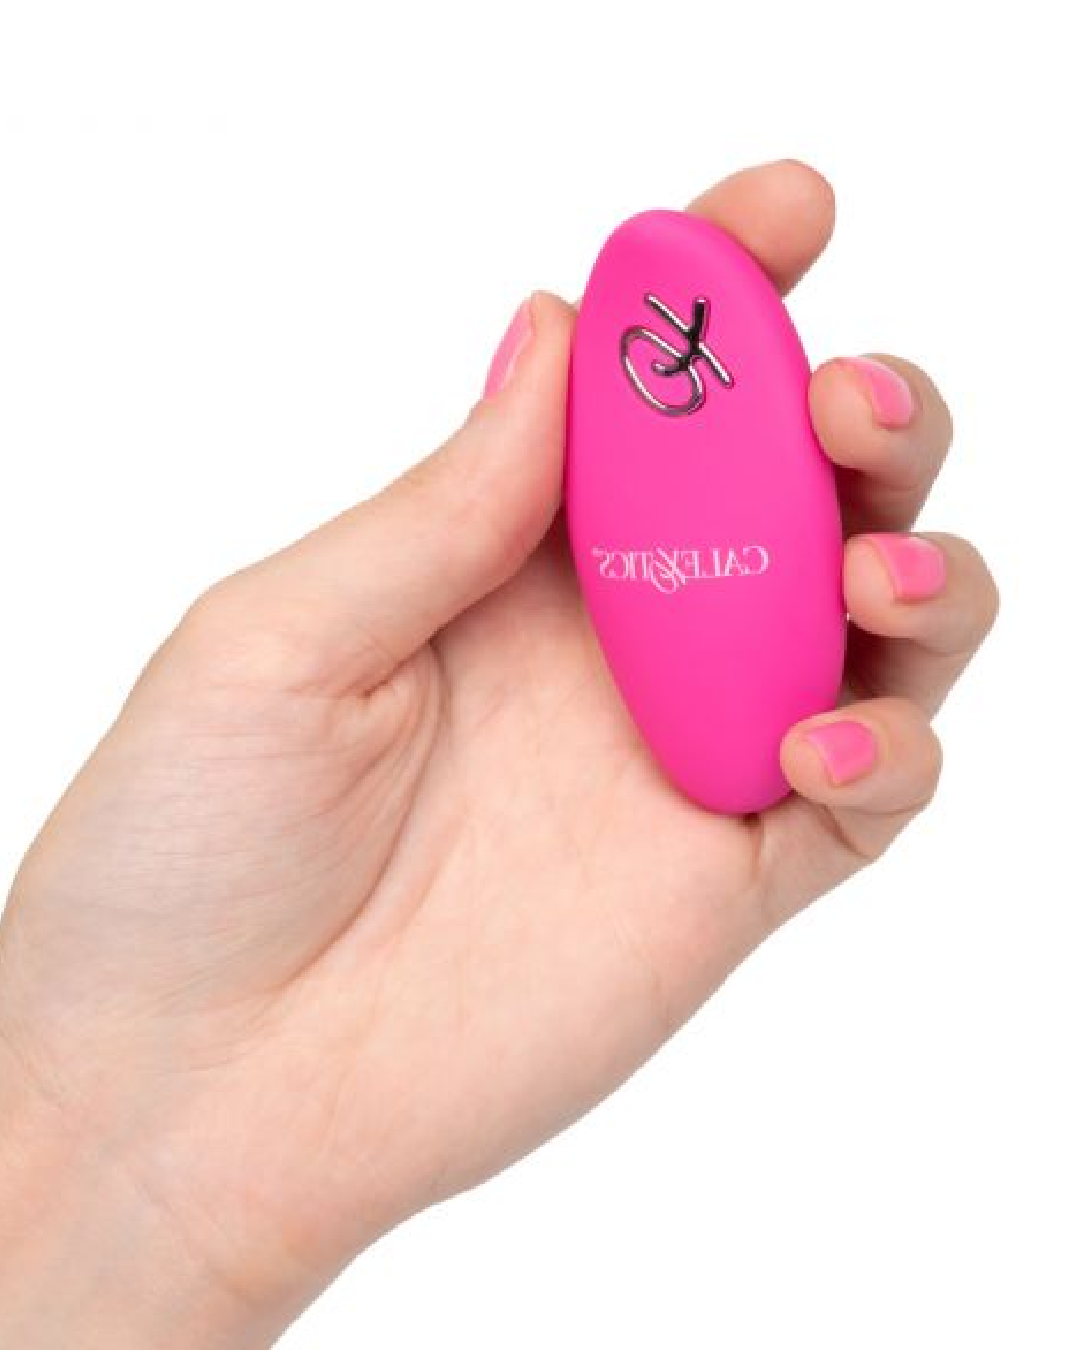 Lock-n-play Remote Dual Motor Kegel System - Pink remote held in a hand